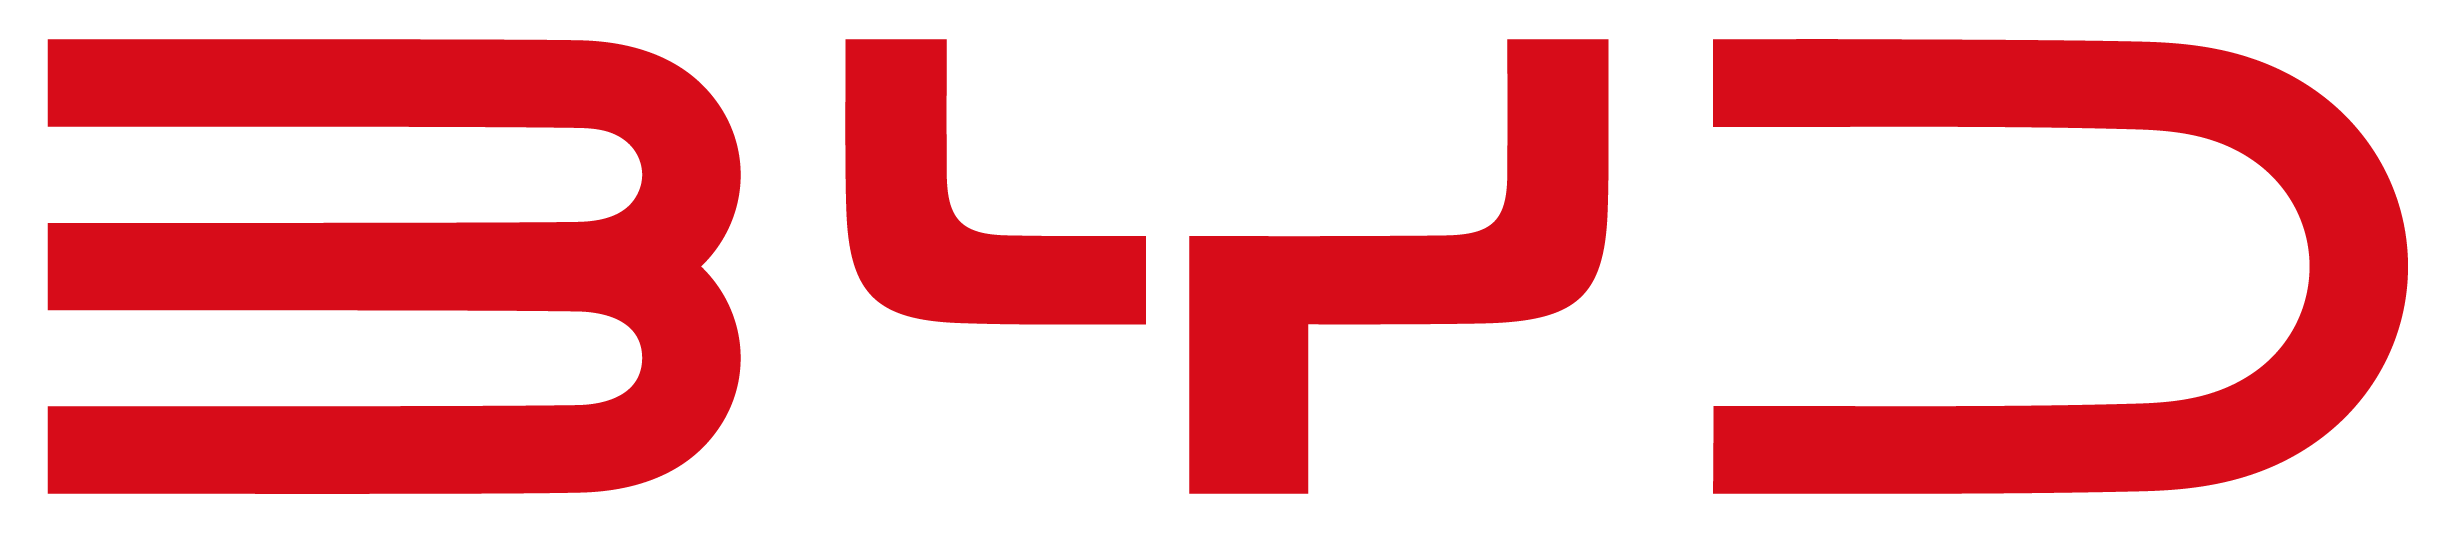 BYD Auto logo 2022